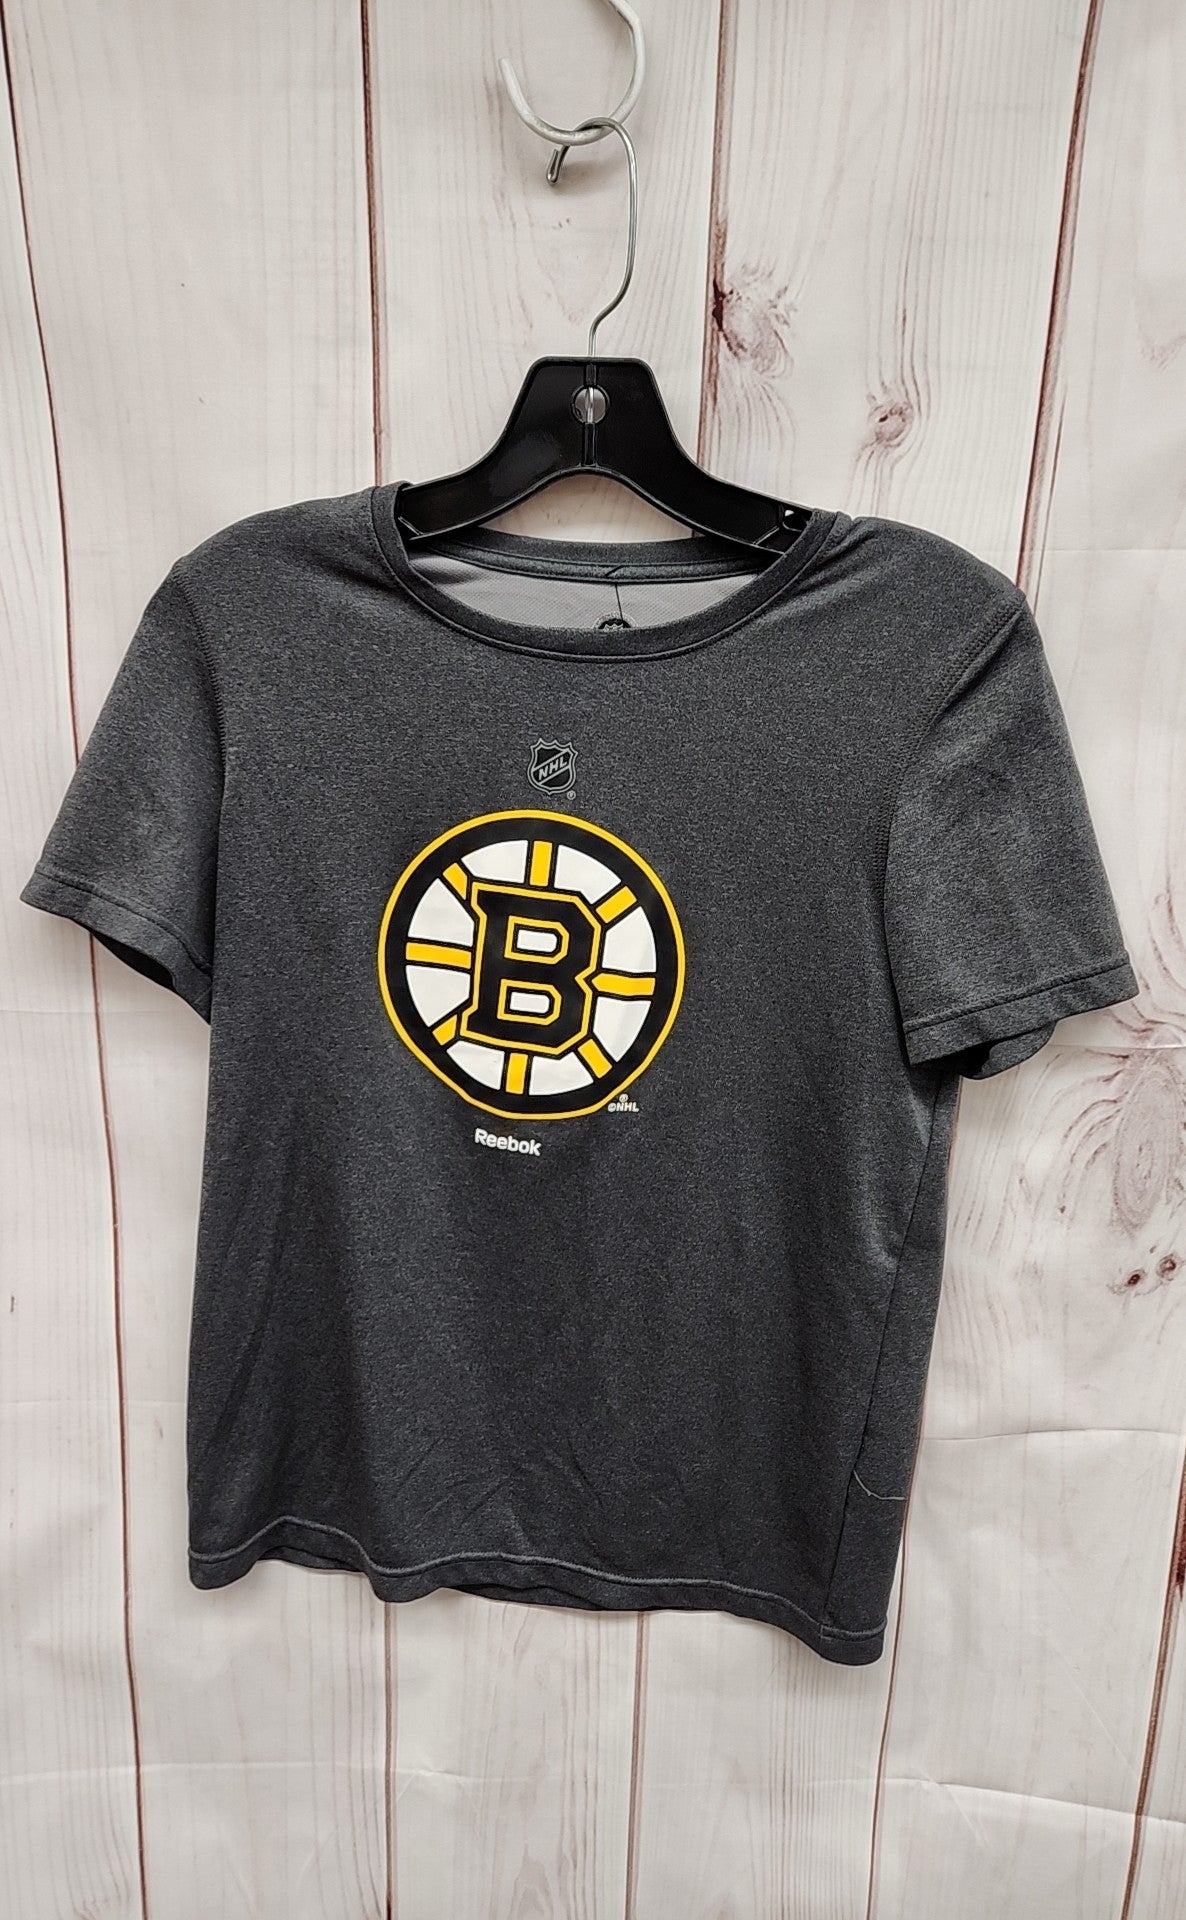 Bruins Boy's Size 14/16 Gray Shirt